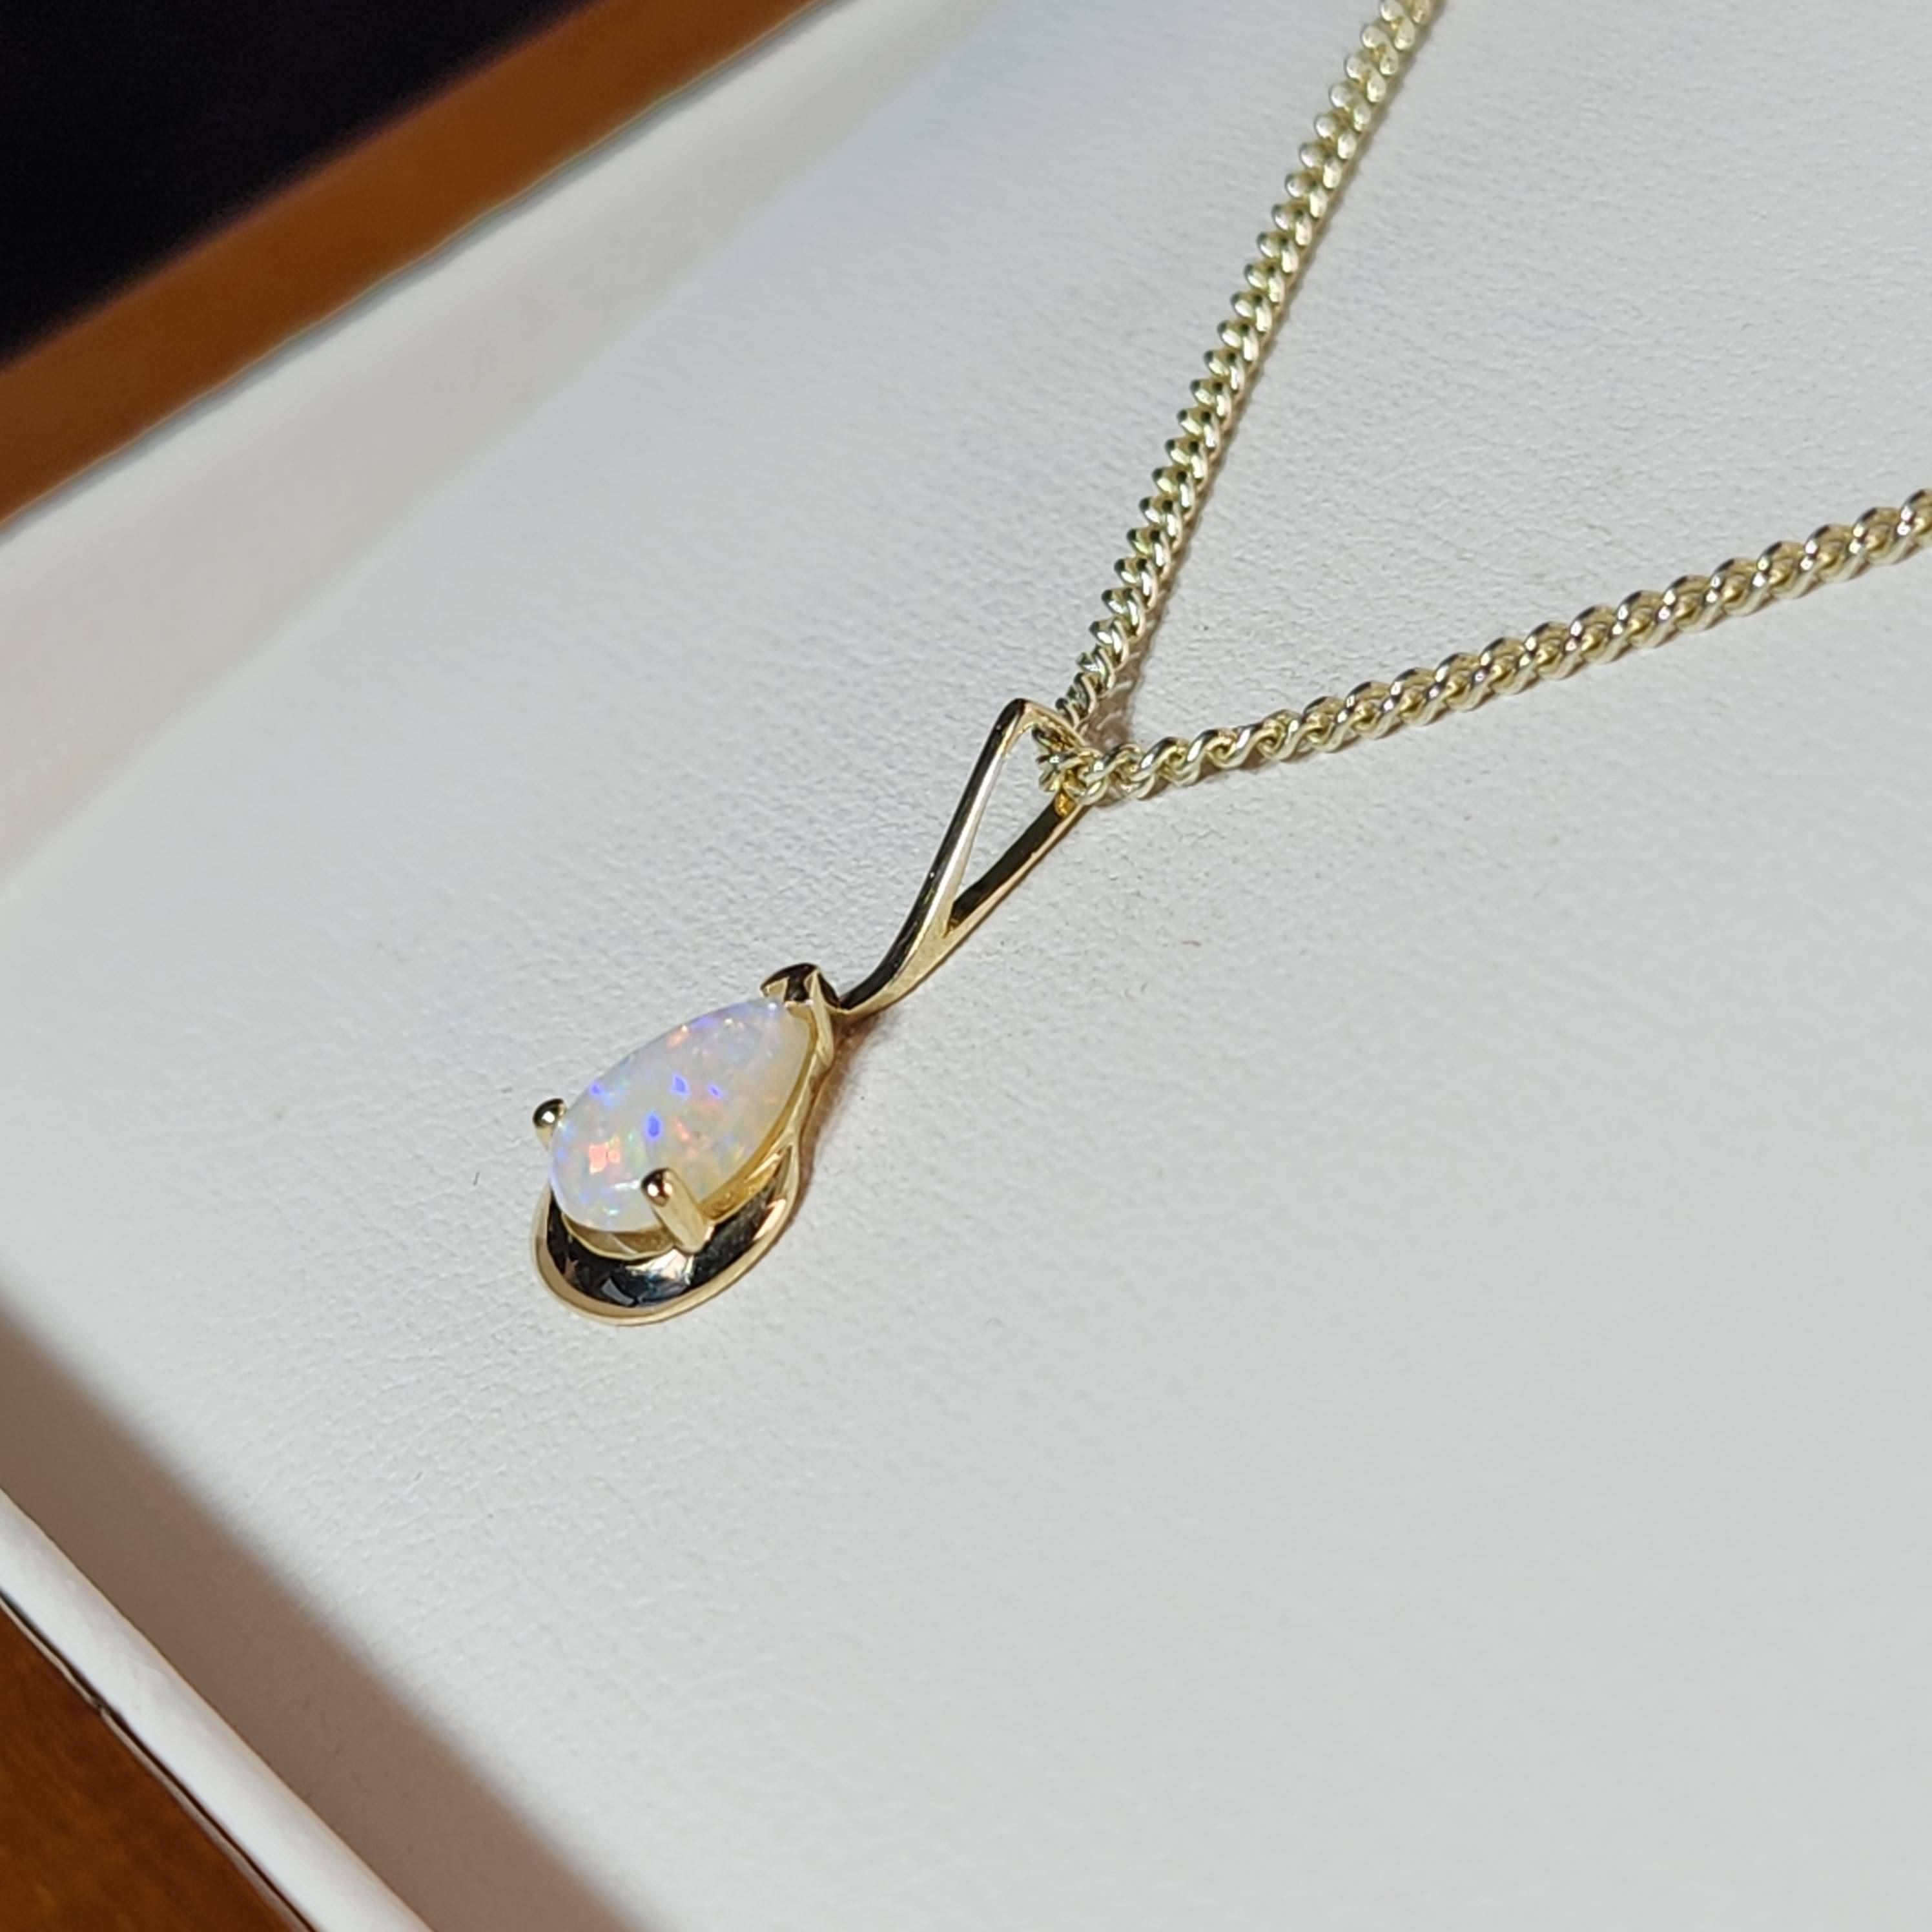 Solid Opal Gold Pendant - Australian Opal Jewellery Online Store